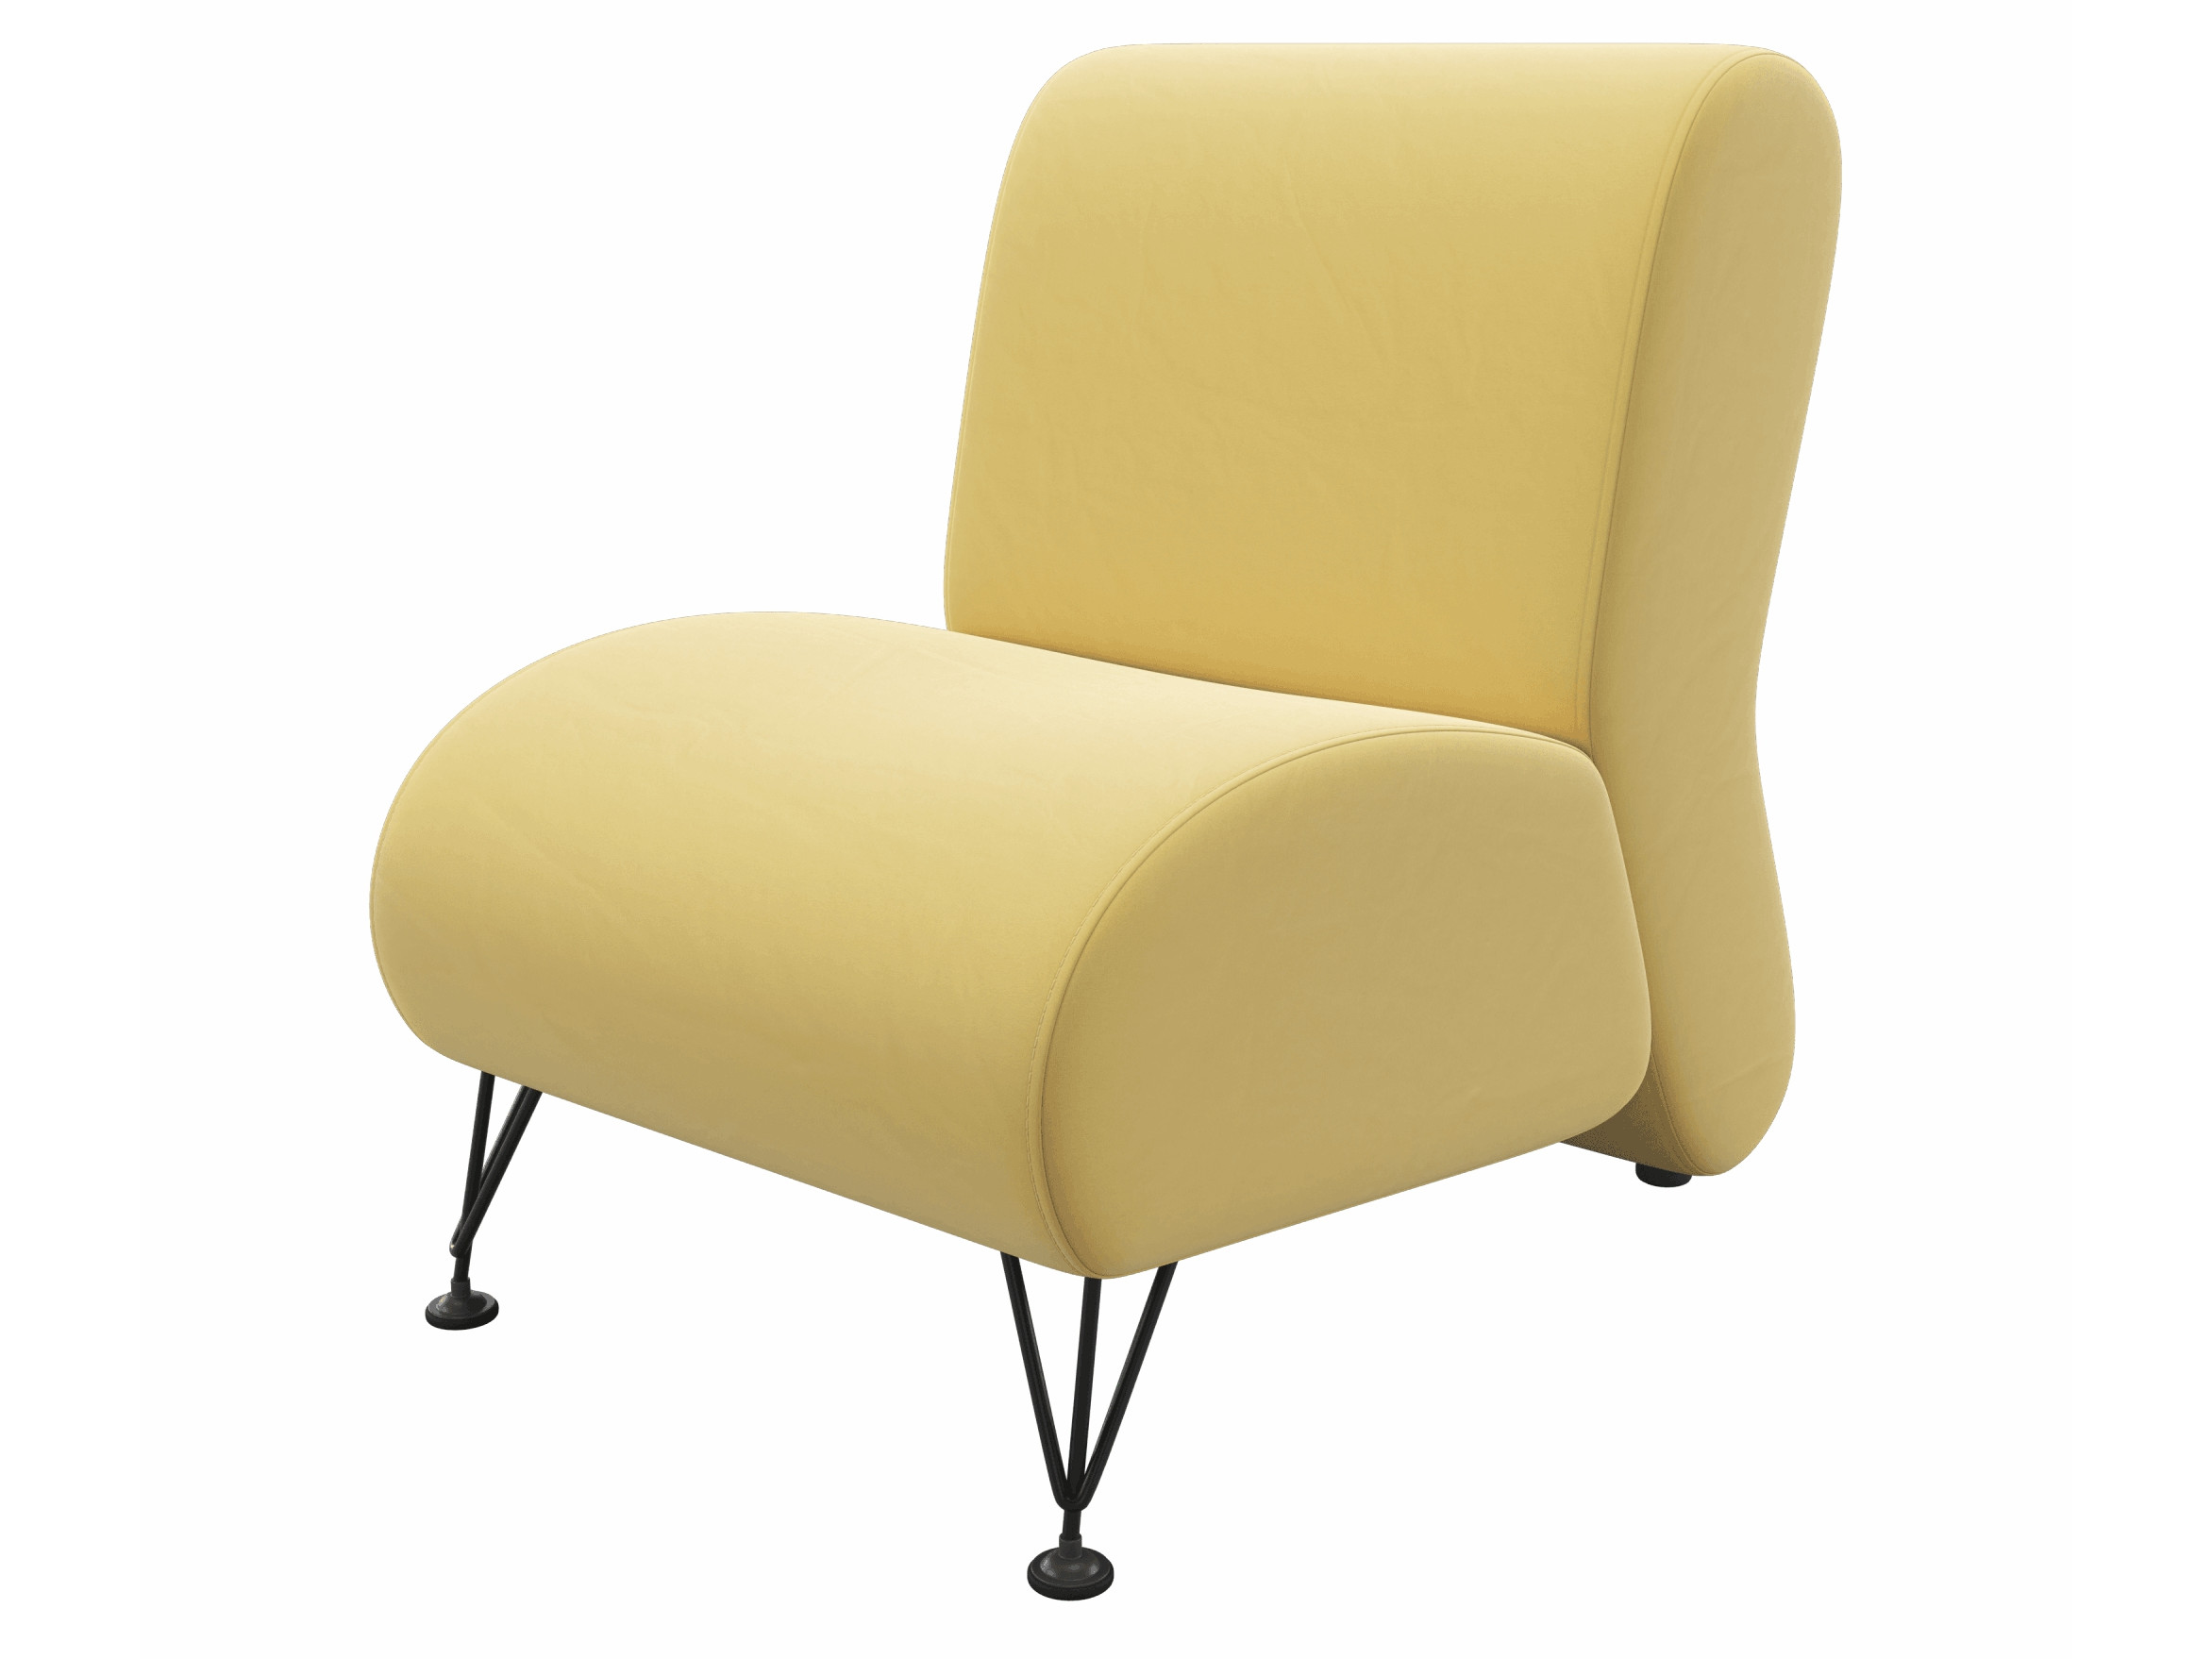 Мягкое дизайнерское кресло Pati желтый MebelVia желтый, Велюр b